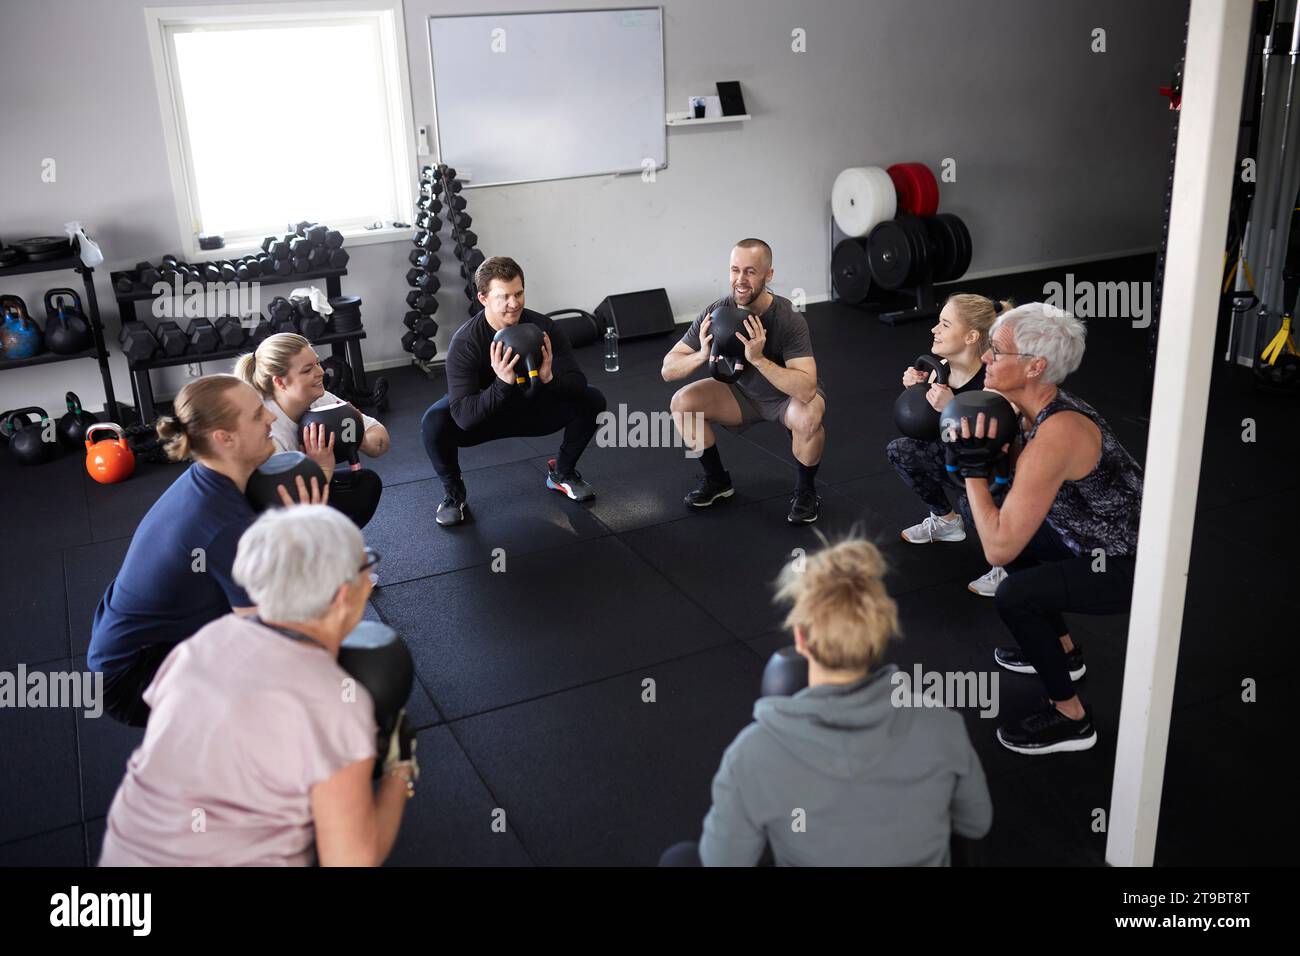 Hochwinkelansicht von Personen, die mit Kettlebells trainieren, während sie im Fitnessstudio hocken Stockfoto